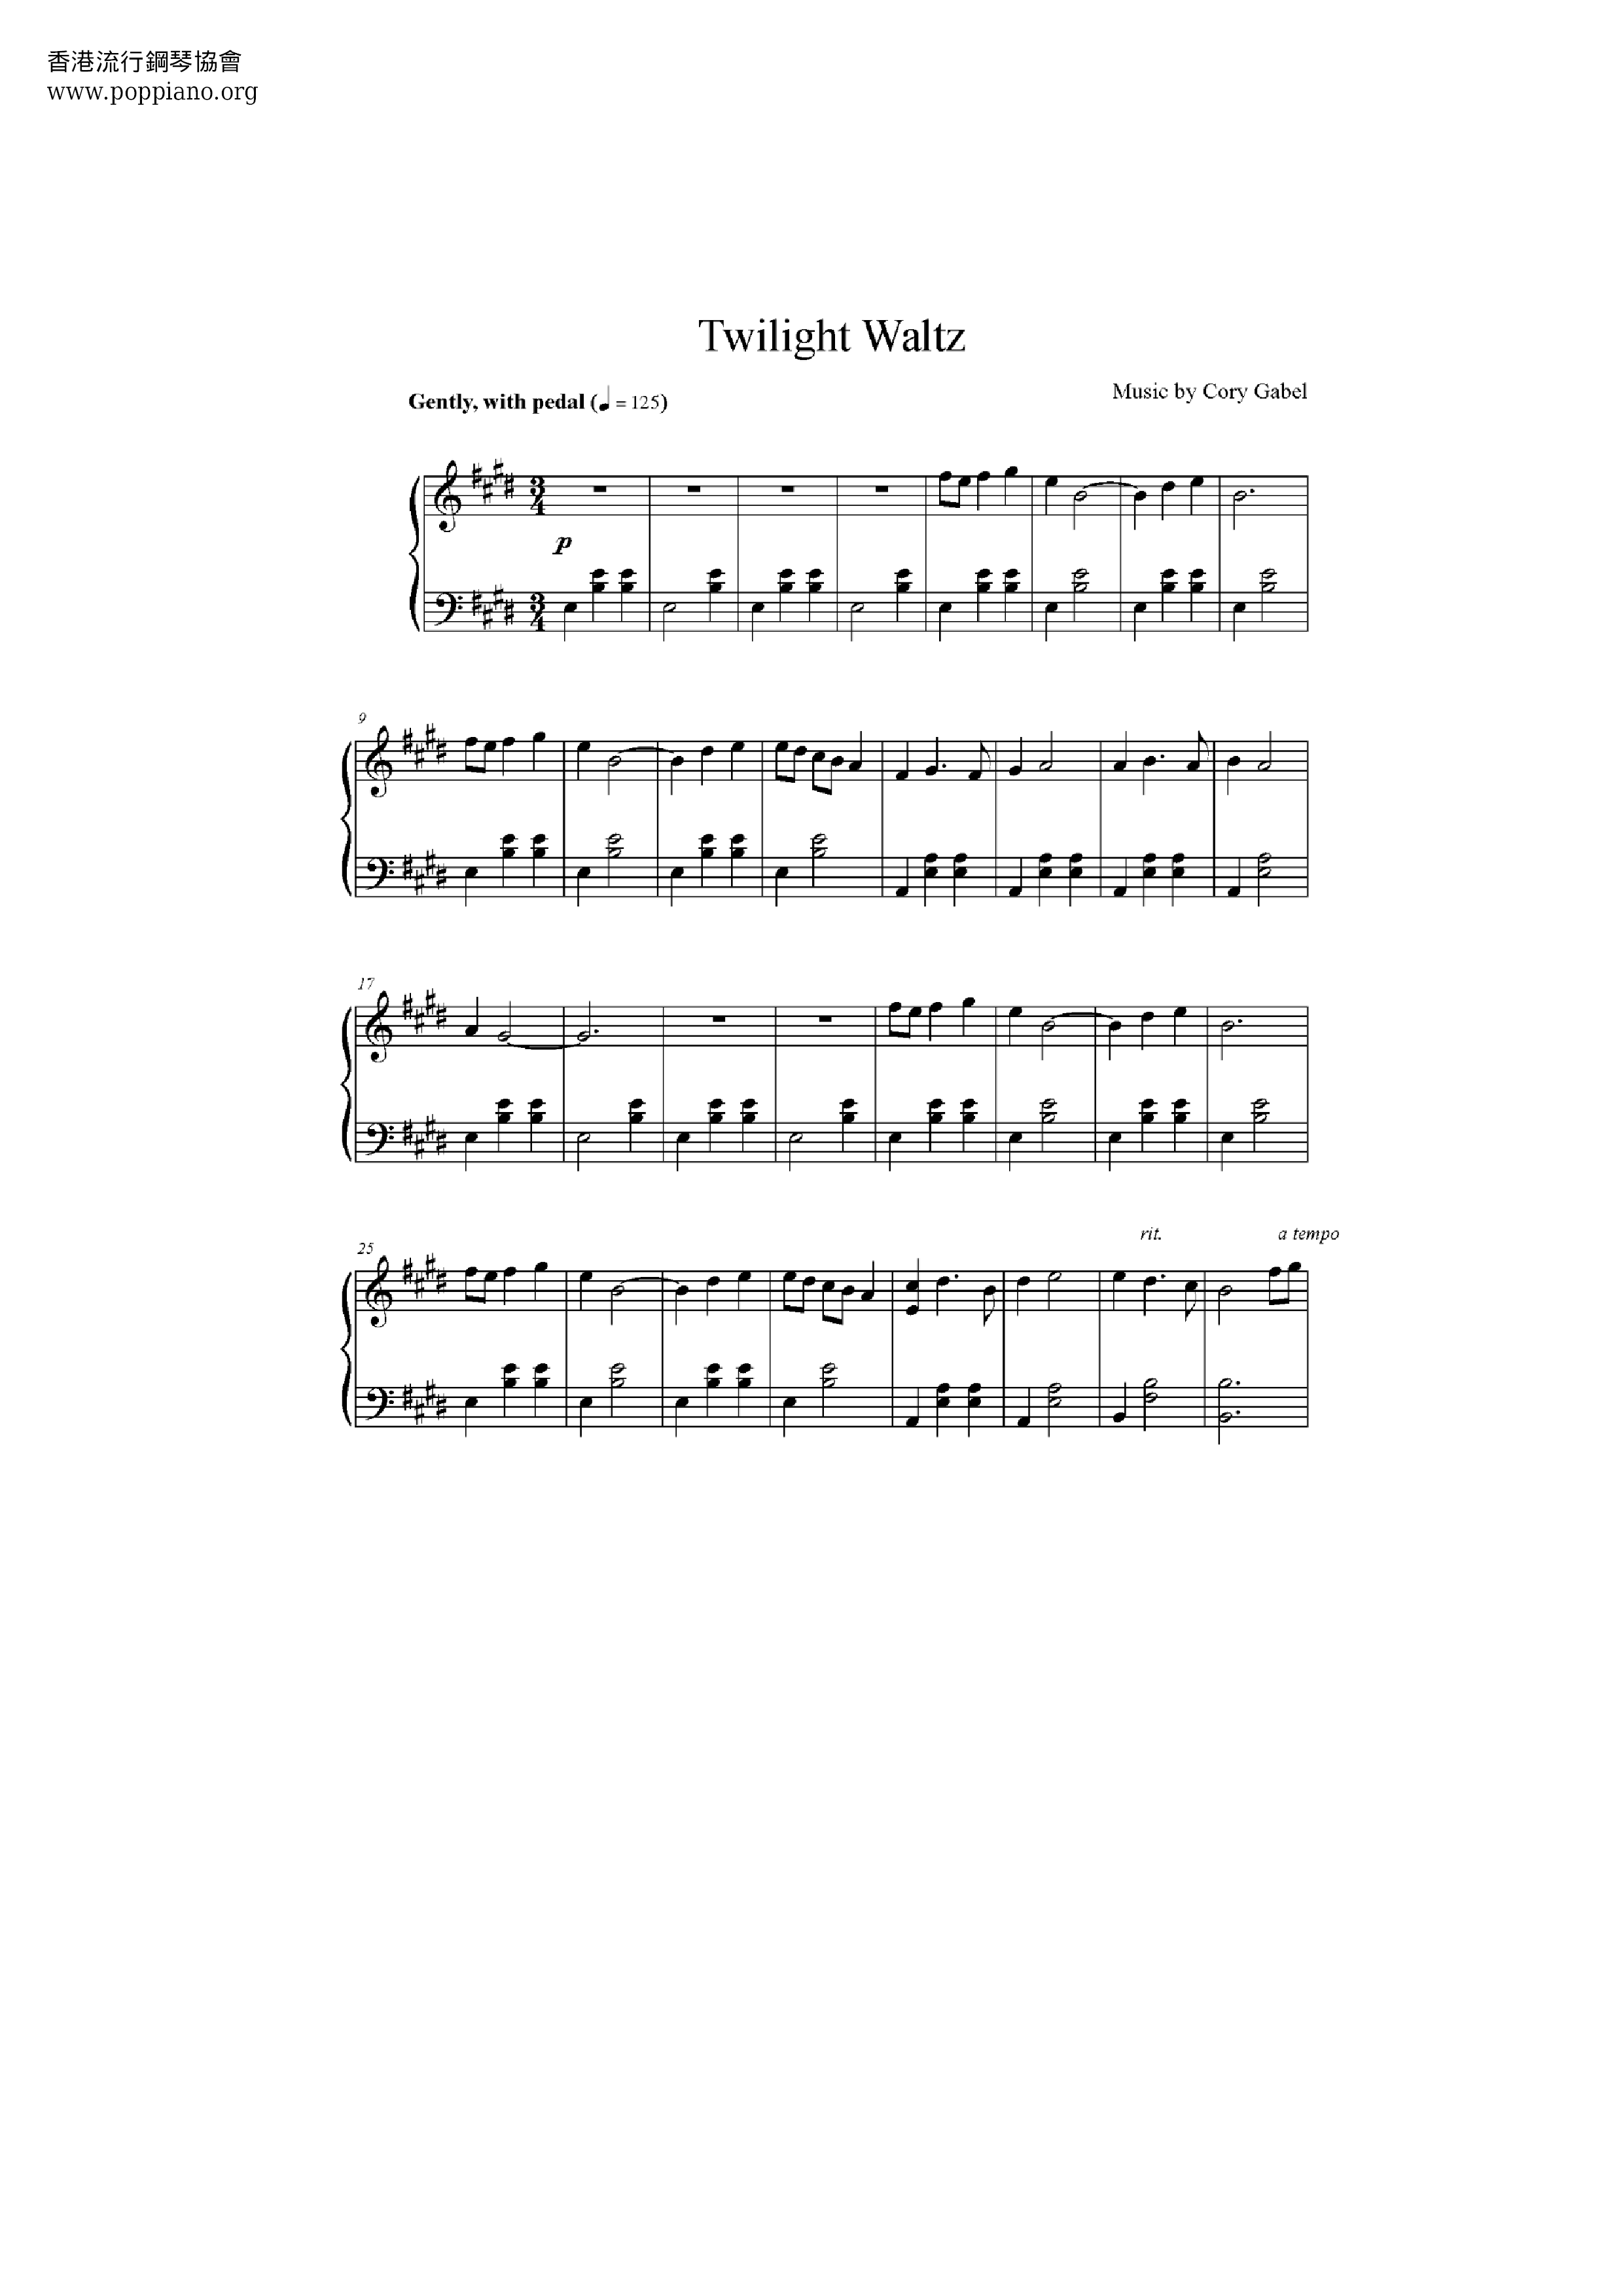 Twilight Waltz Score